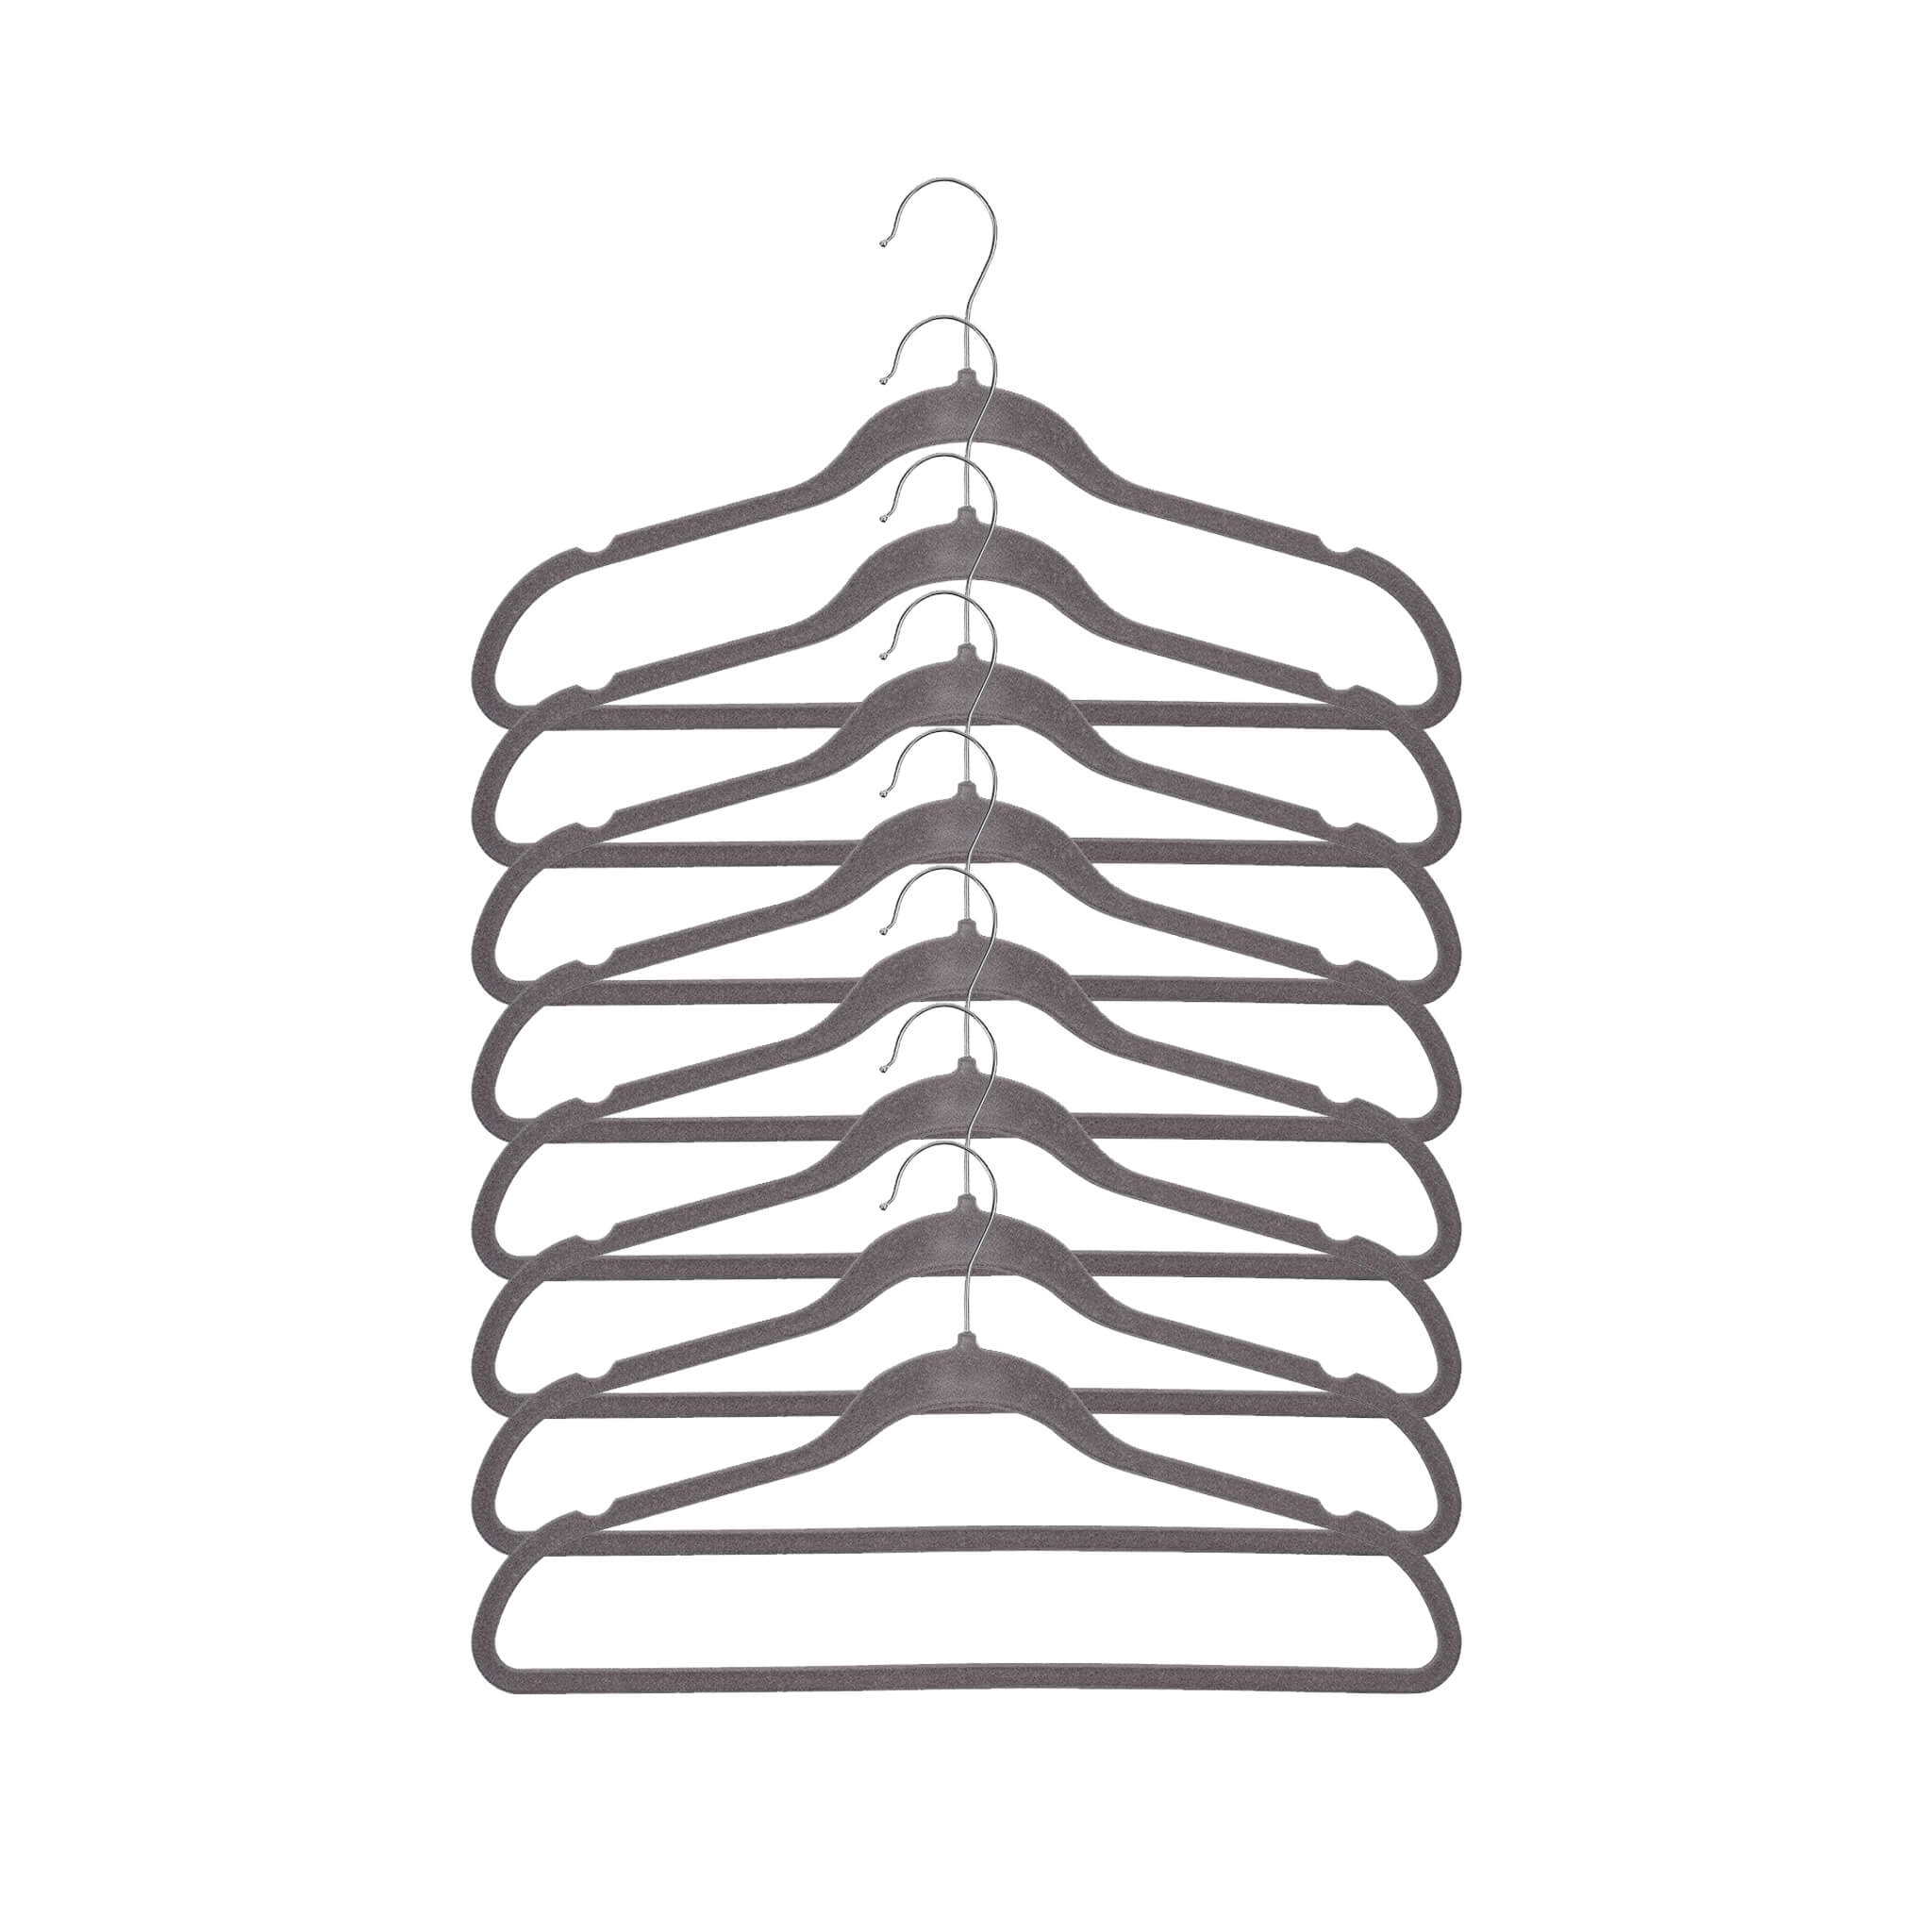 Set of 8 hangers